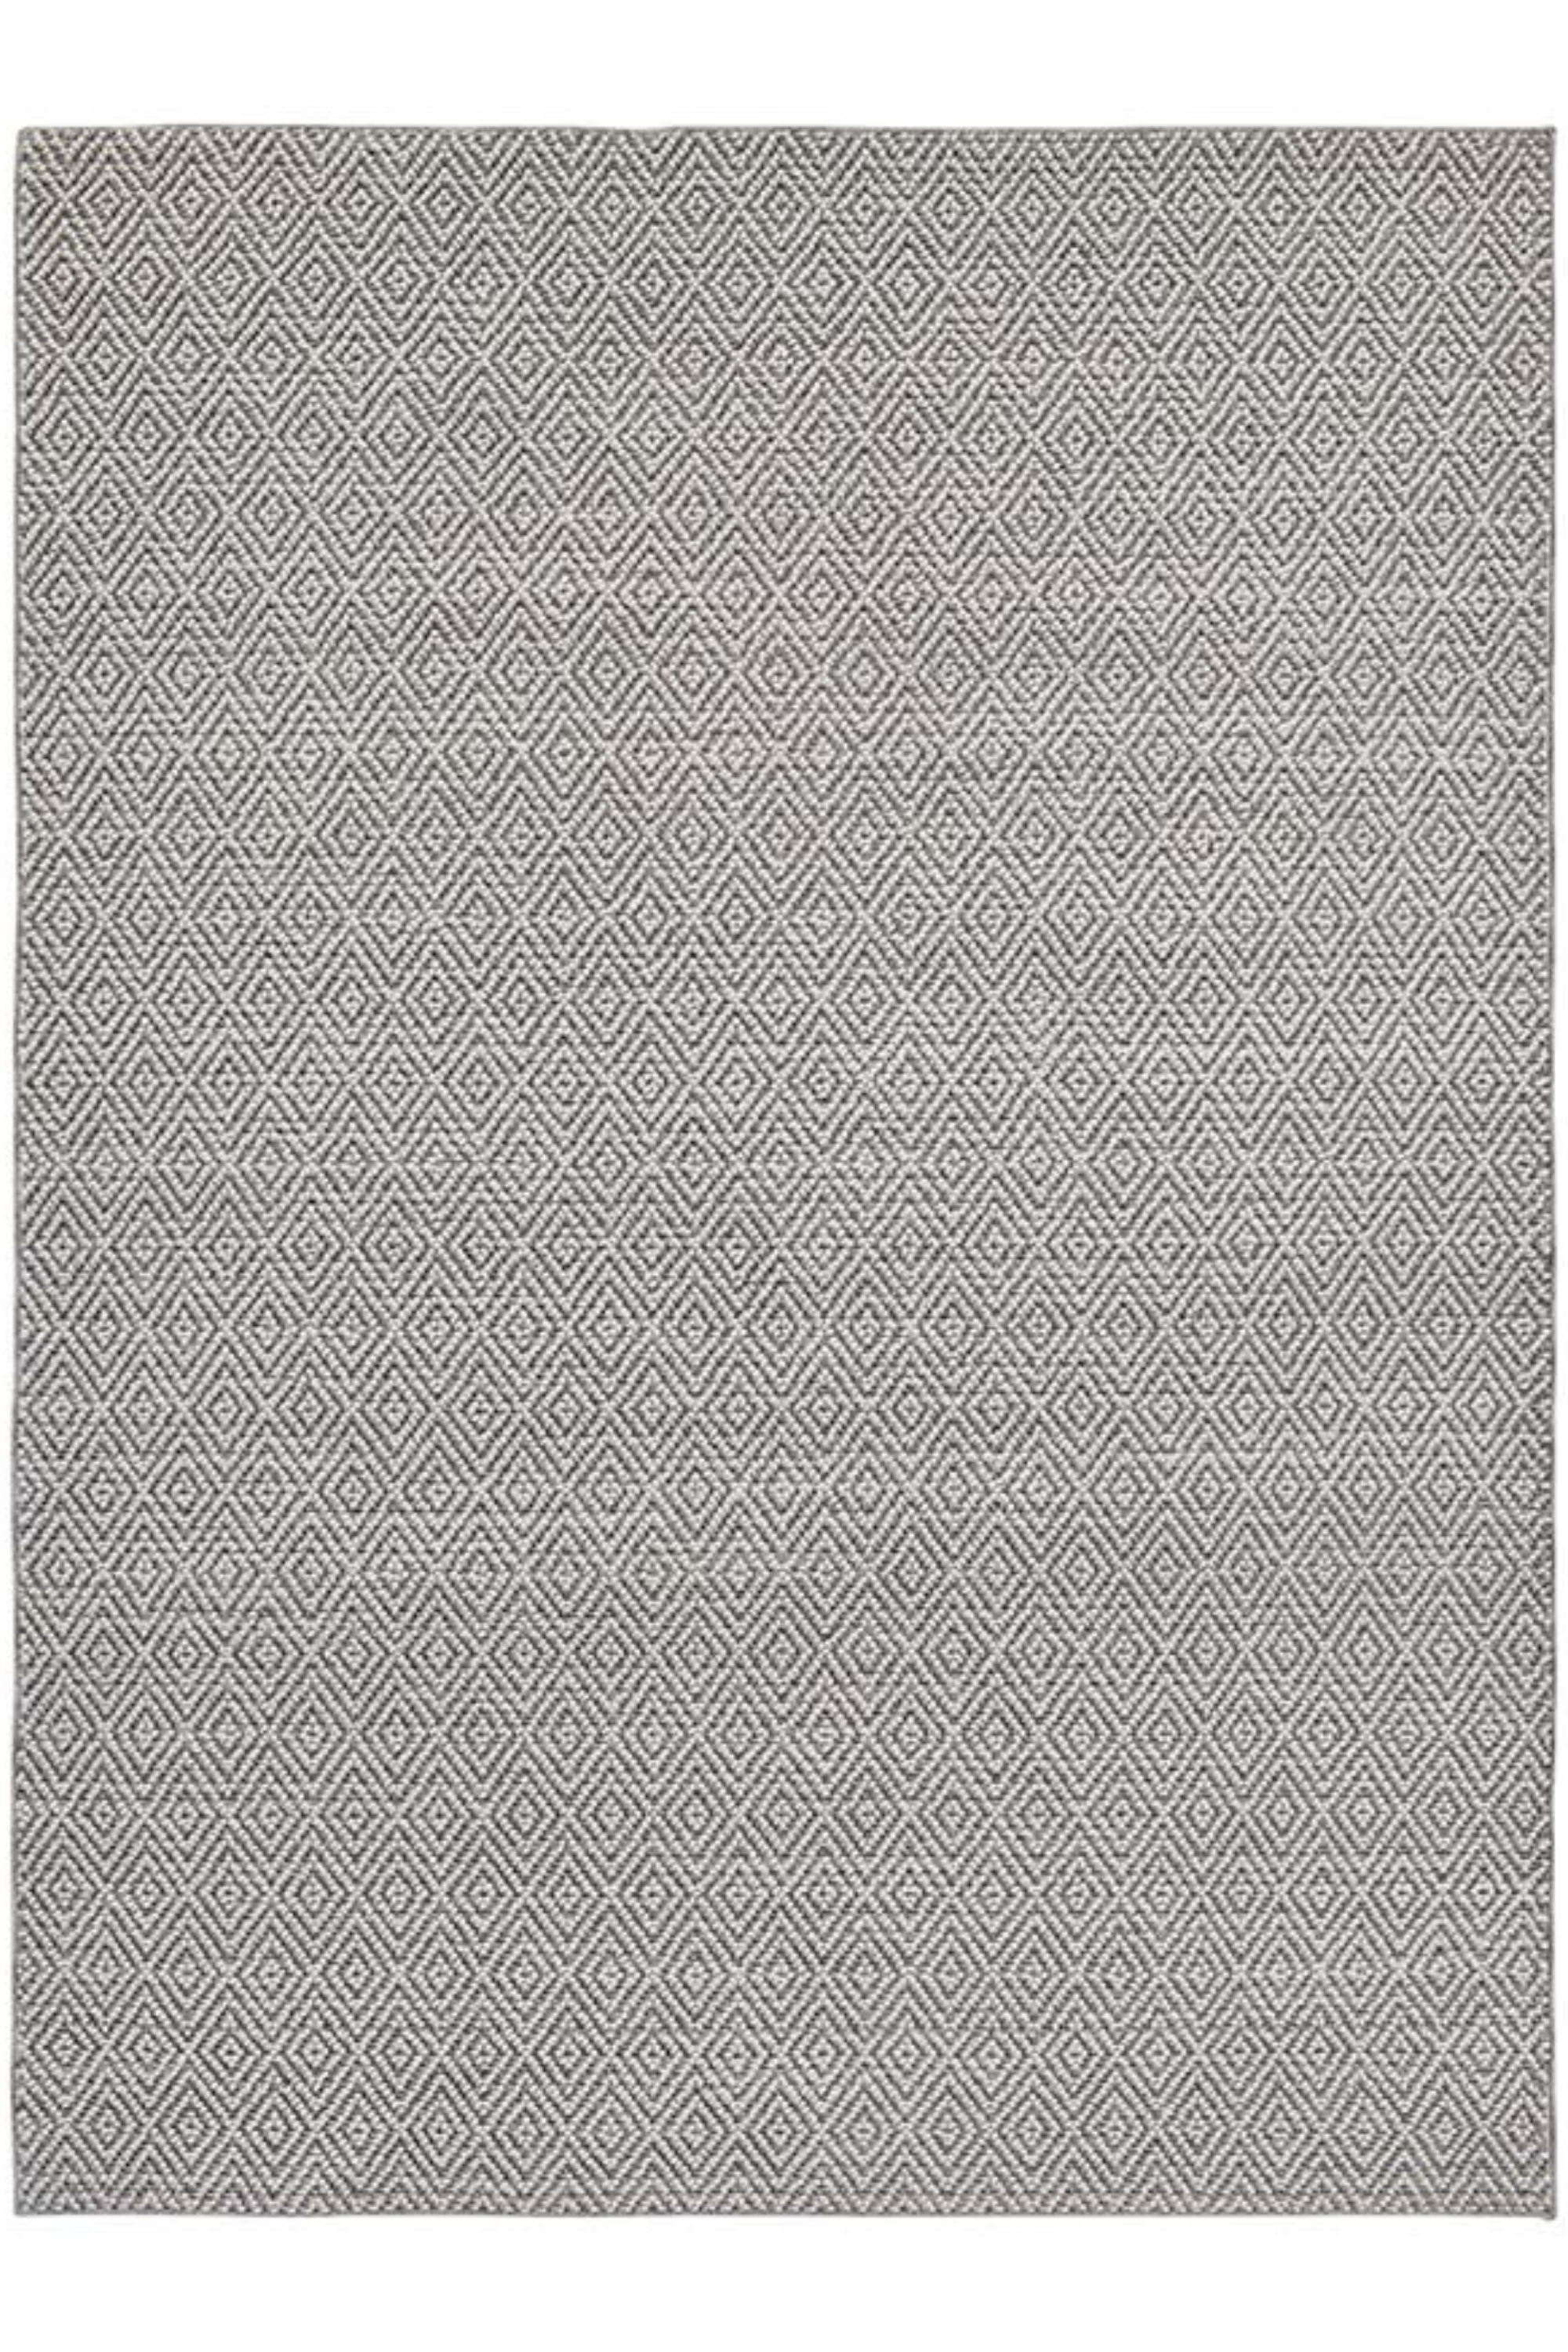 Vercai Rugs Crystal Light Grey Dark Grey - 80x150cm